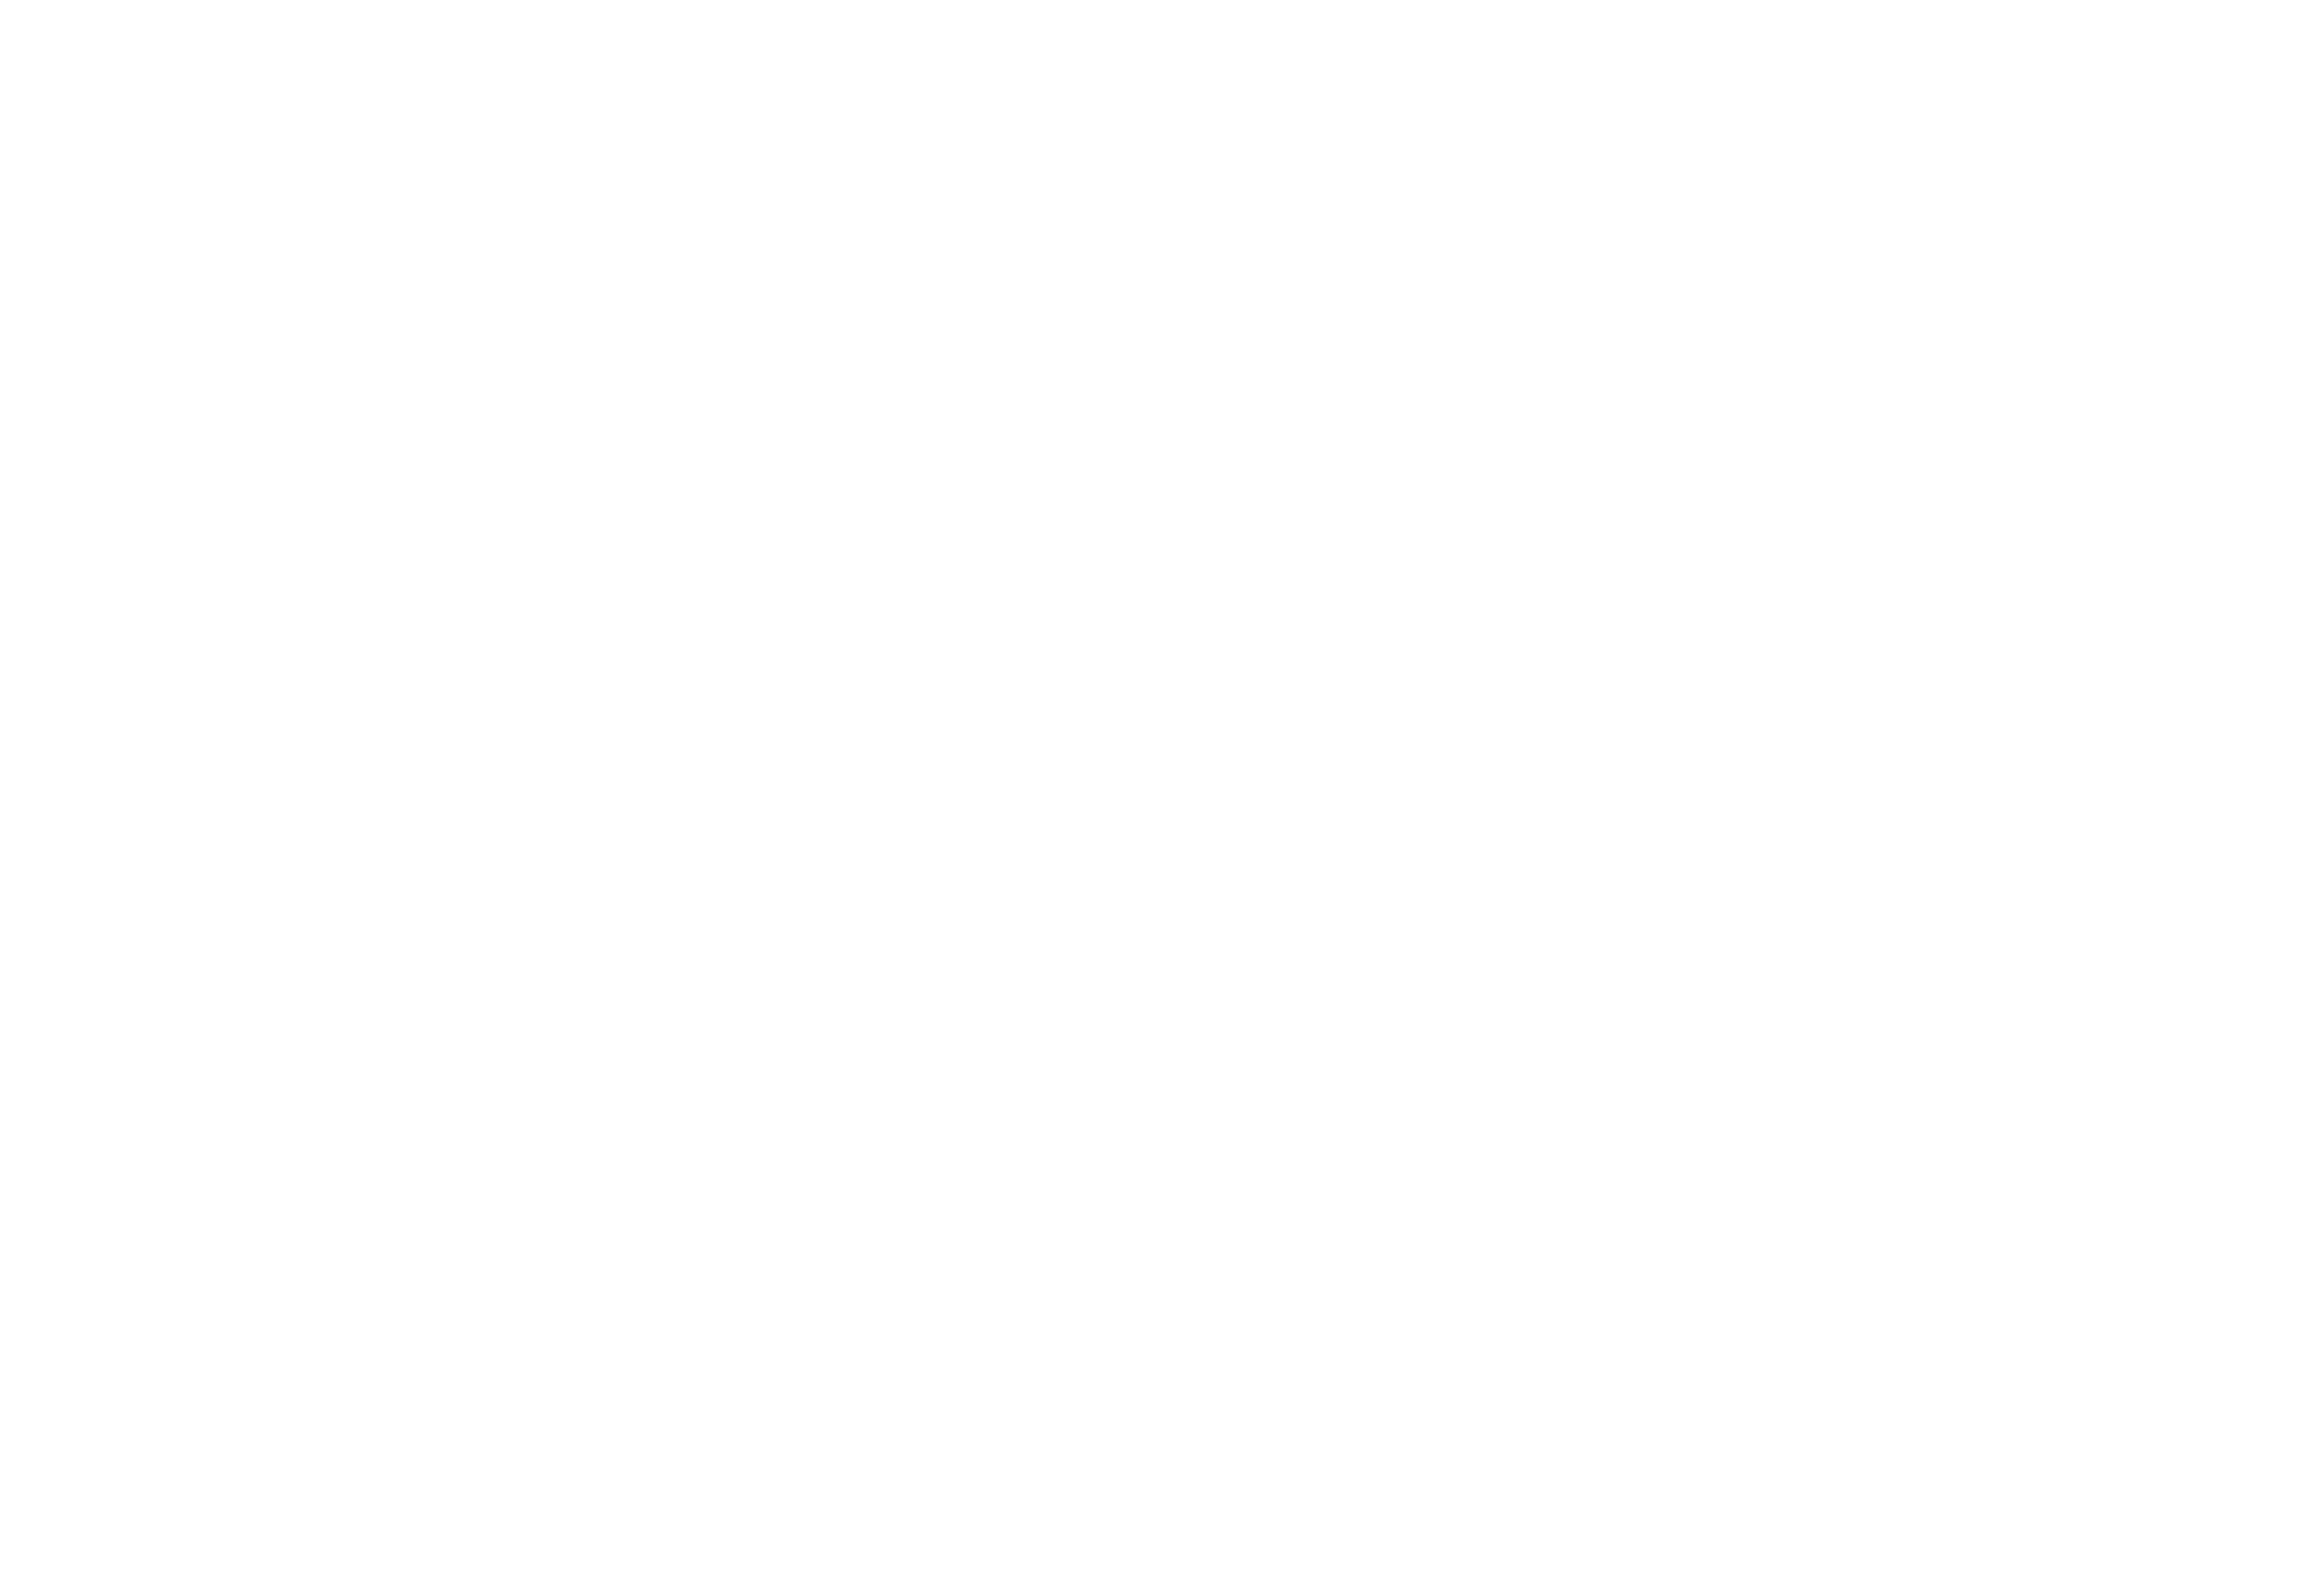 Roam Travel Company